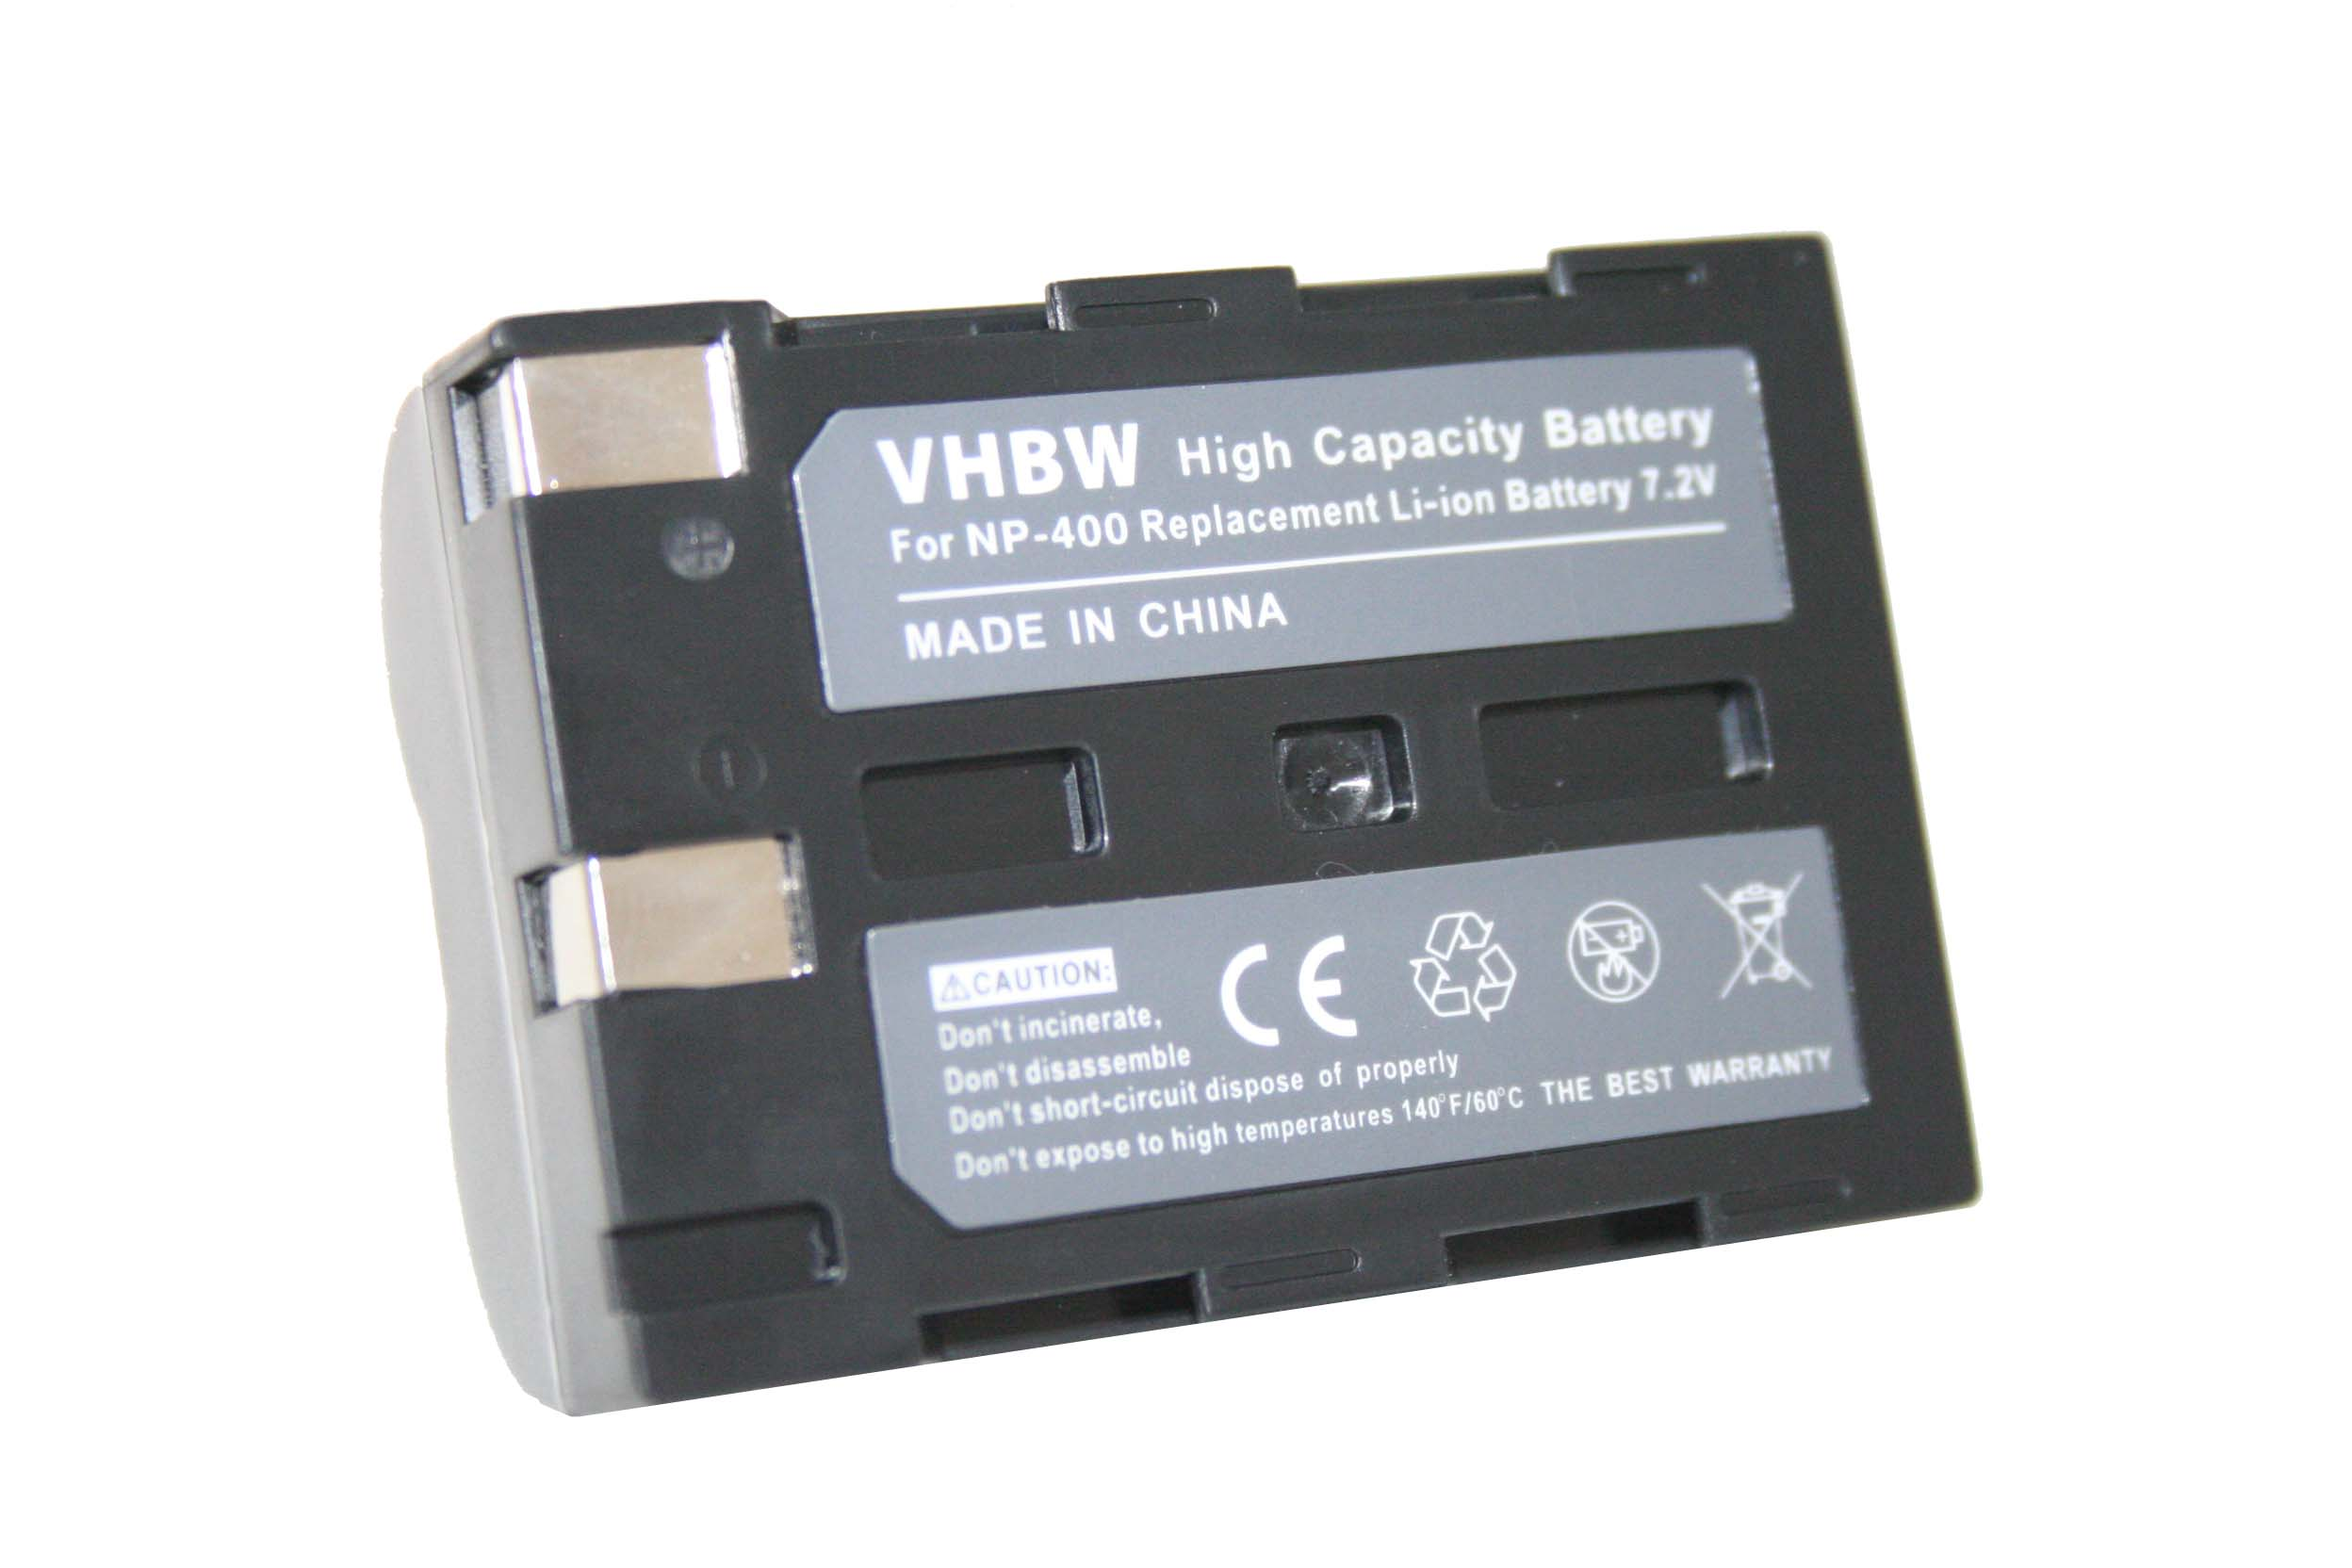 VHBW kompatibel mit Pentax K20D, Volt, Kamera, 1200 Akku K10D - Li-Ion 7.2